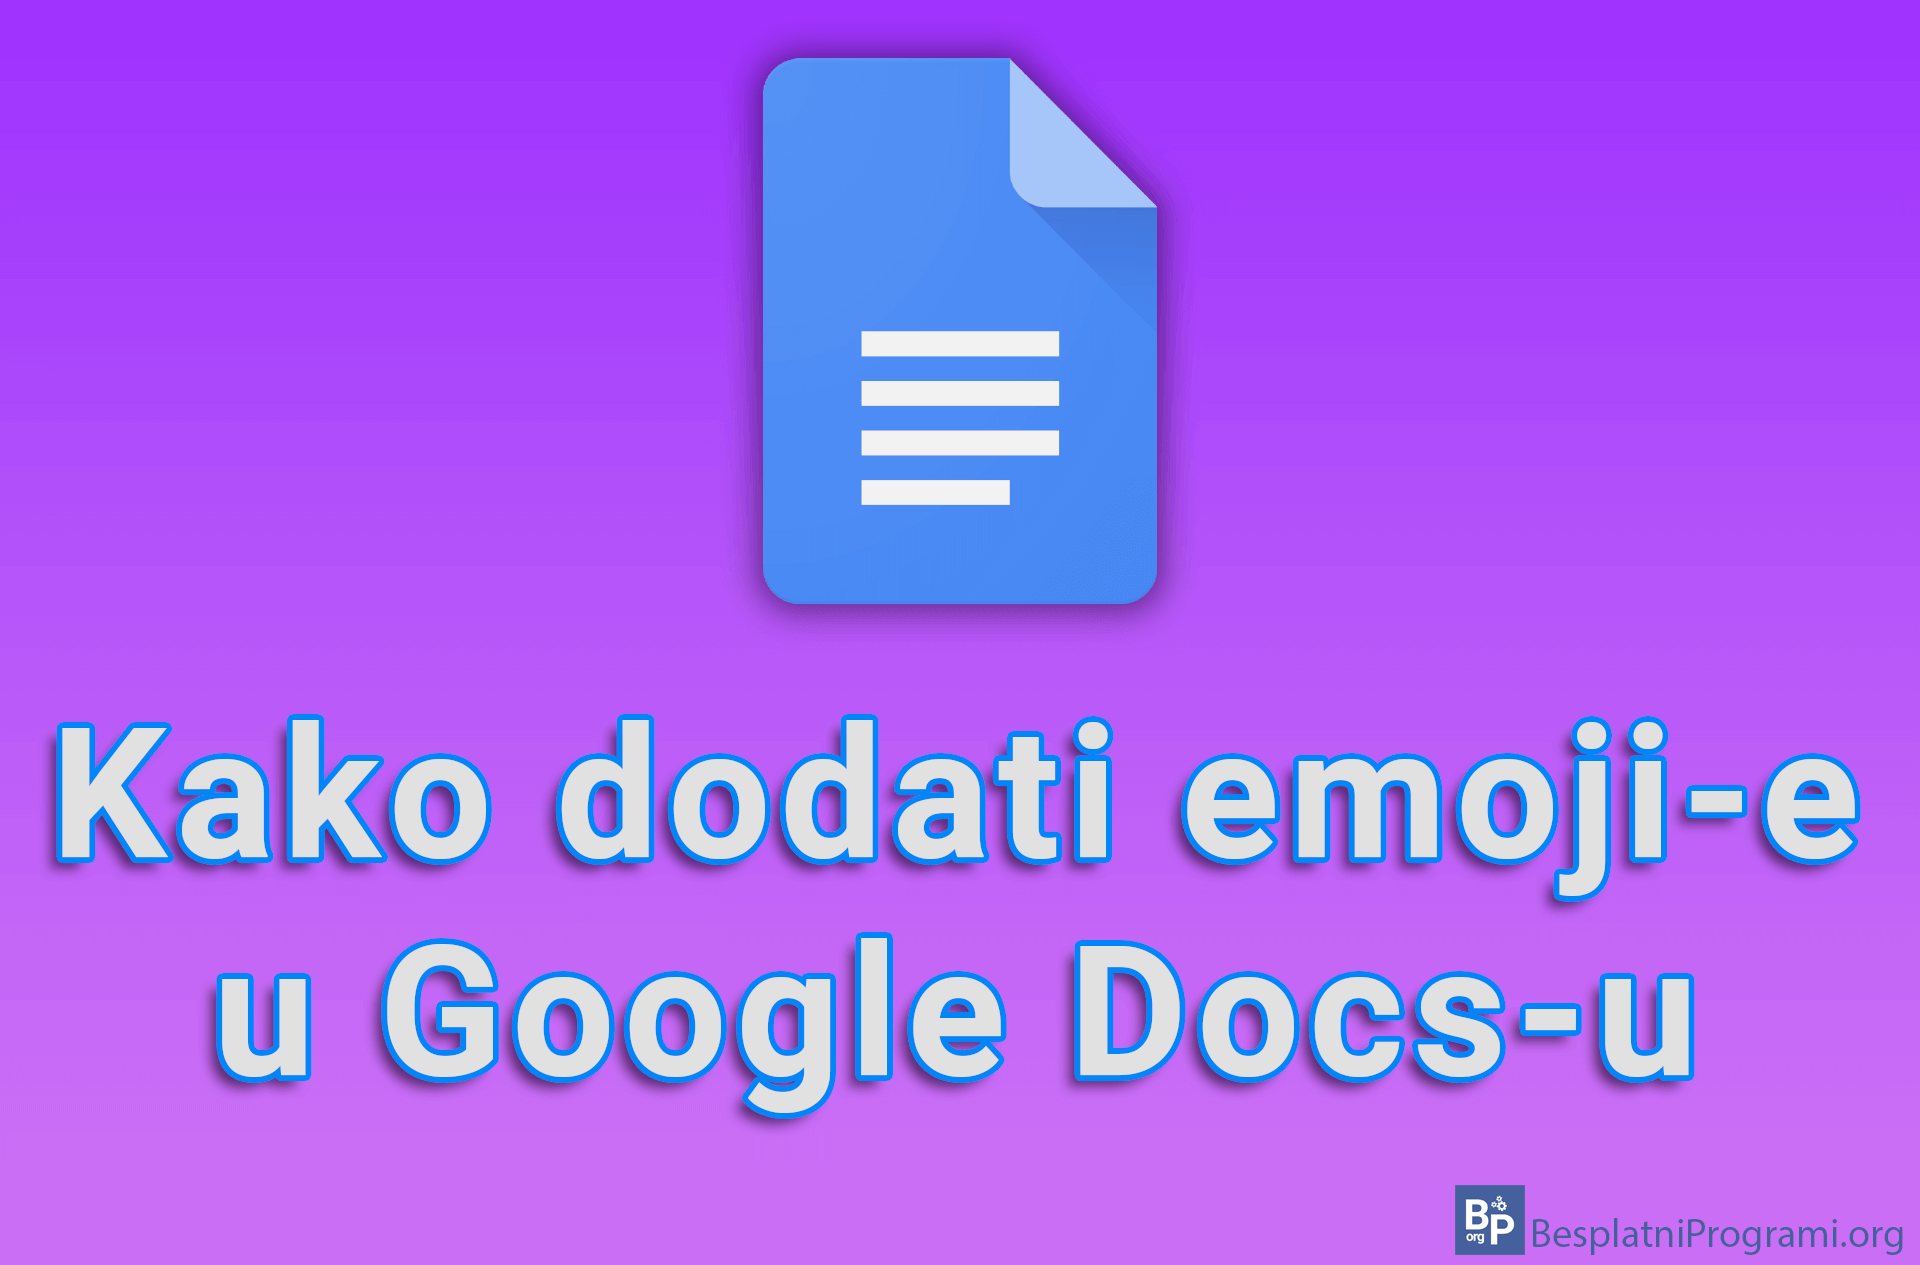 Kako dodati emoji-e u Google Docs-u